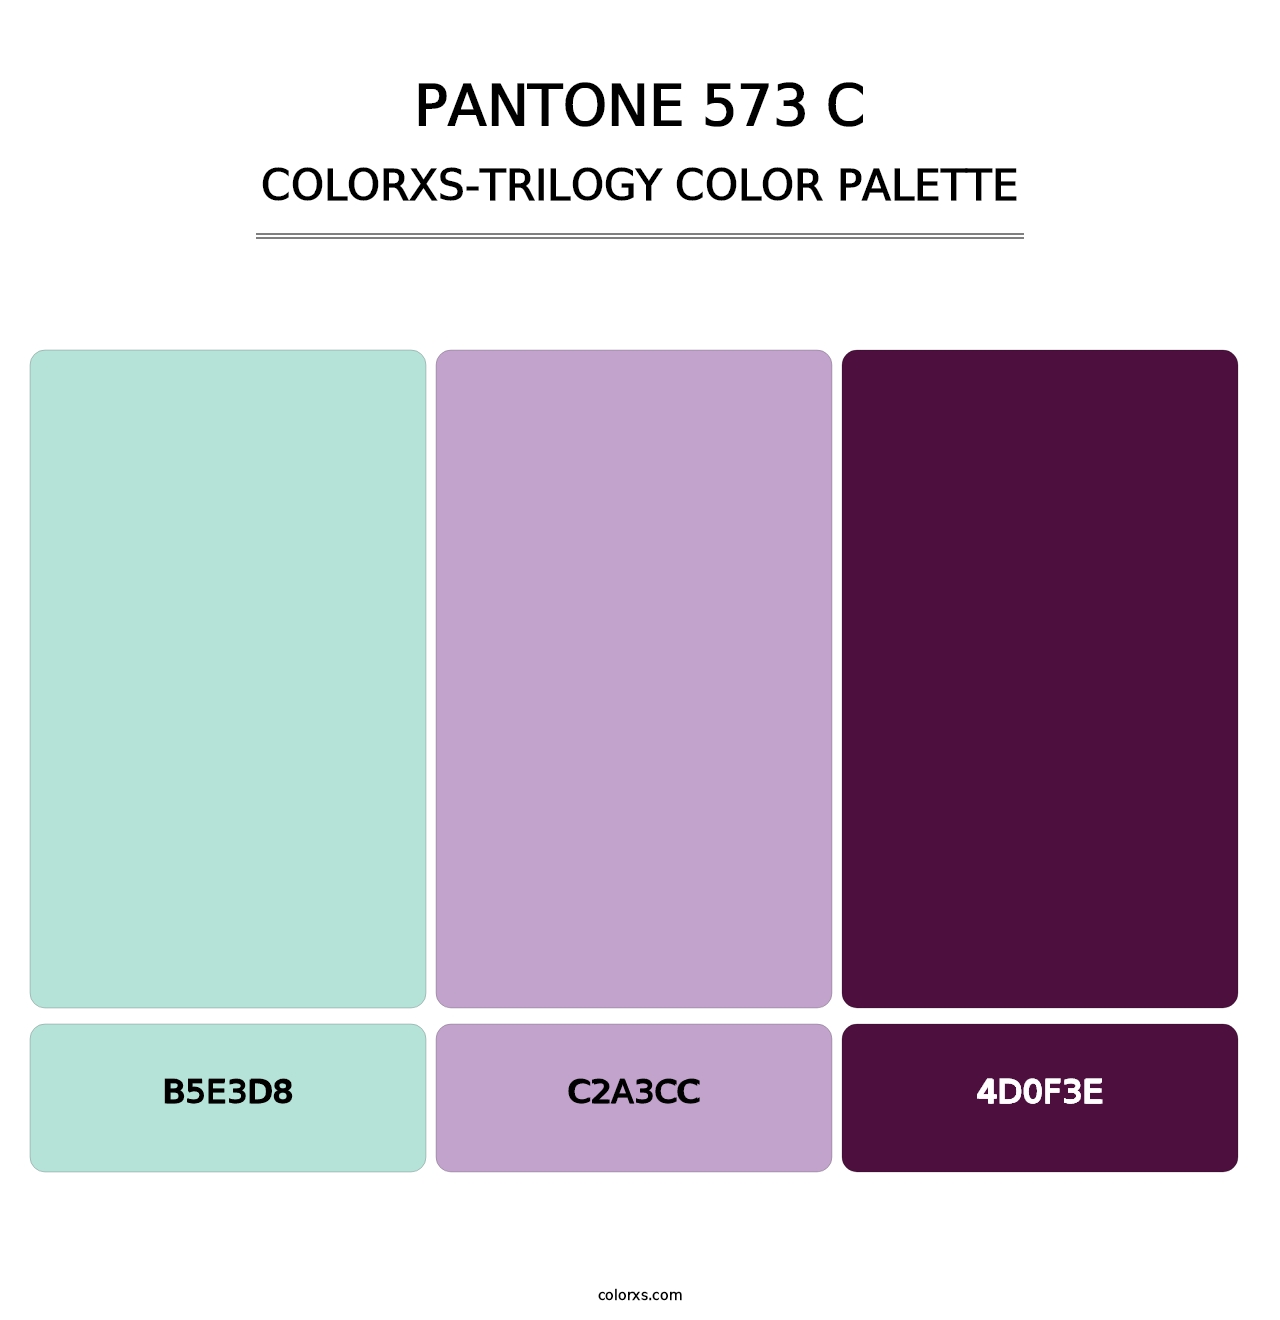 PANTONE 573 C - Colorxs Trilogy Palette